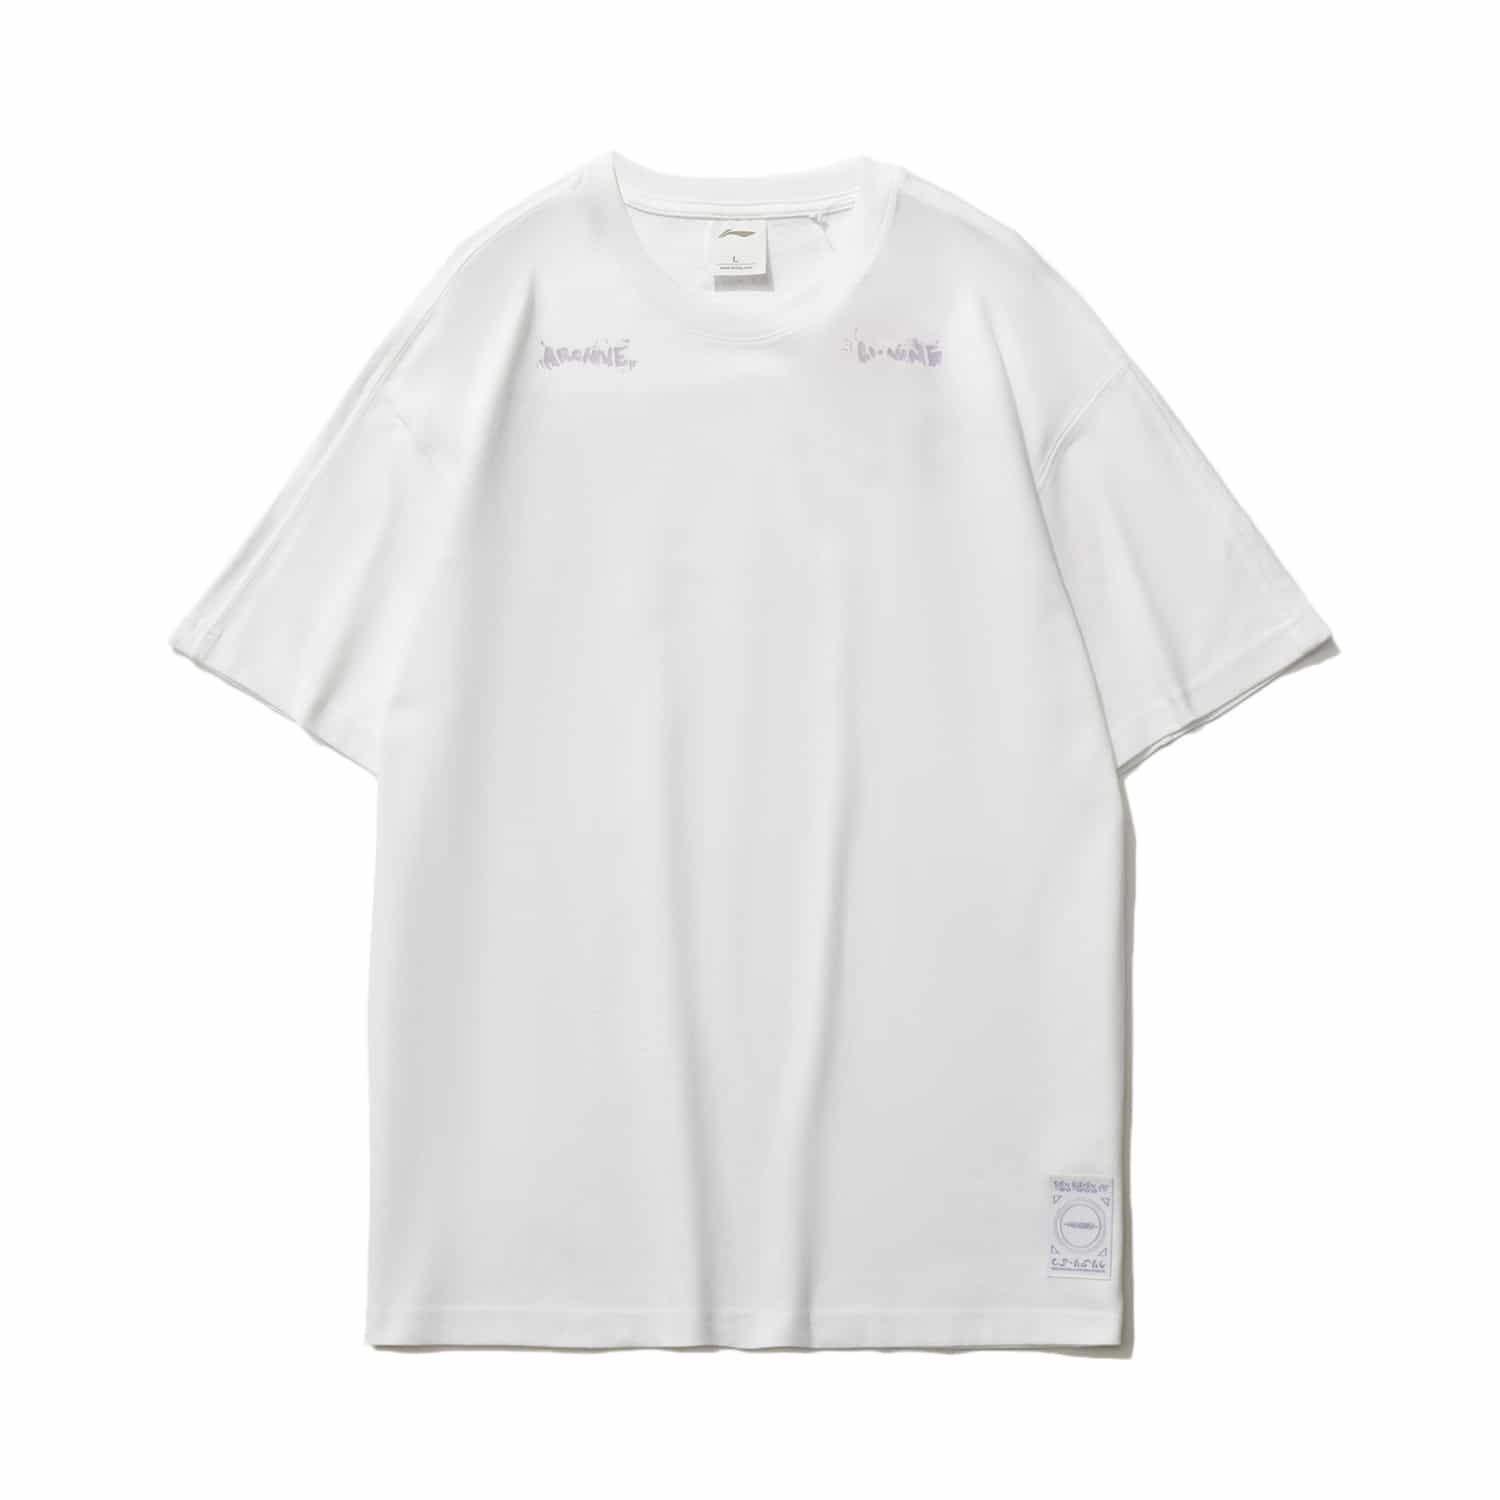 運動時尚系列寬鬆短袖 T-SHIRT - 標準白